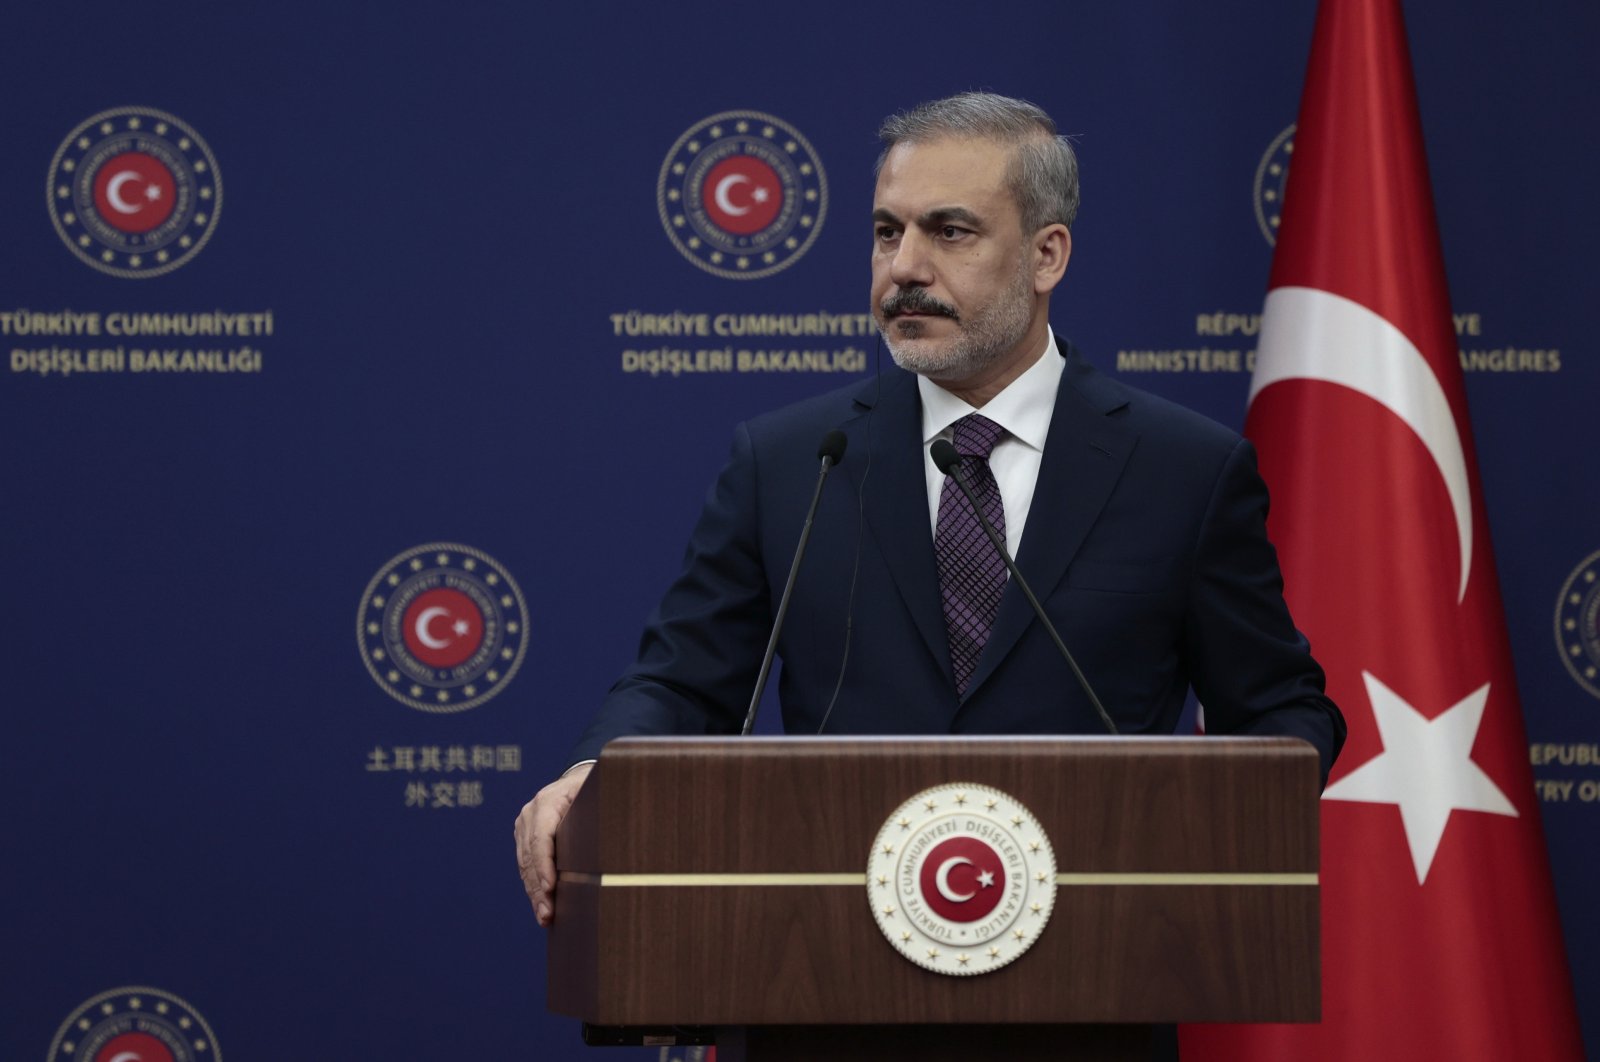 Türkiye, Avrupa Birliği'ne ilişkilerde “kimlik siyasetinden” kaçınma çağrısında bulundu